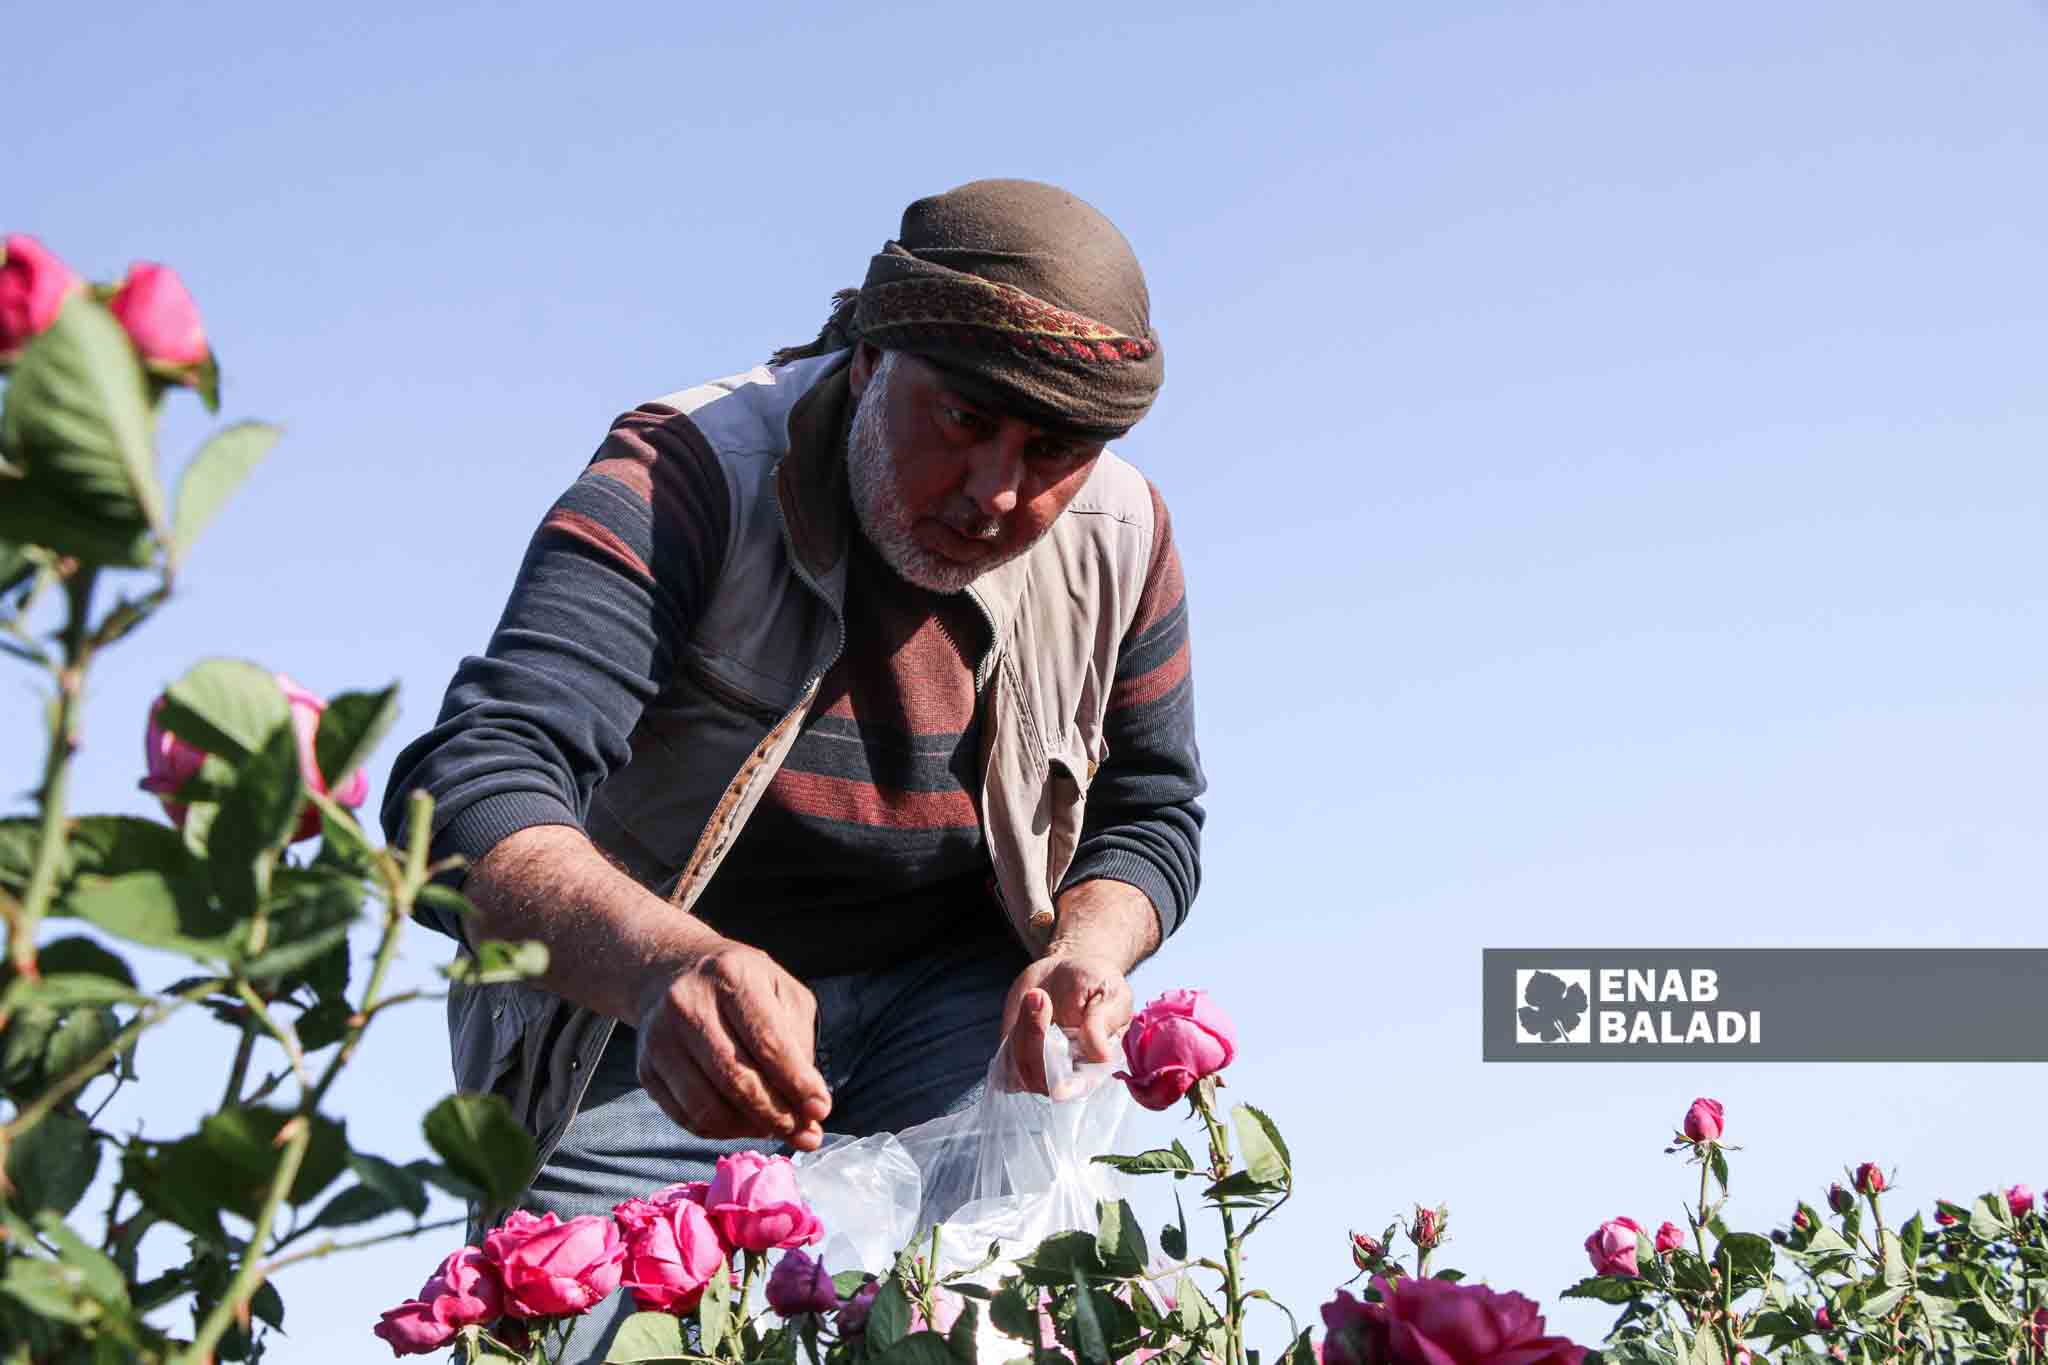 يعمل المزارع خالد مصطفى في مجال الورد منذ ثلاث سنوات في بلدة كللي بريف إدلب
